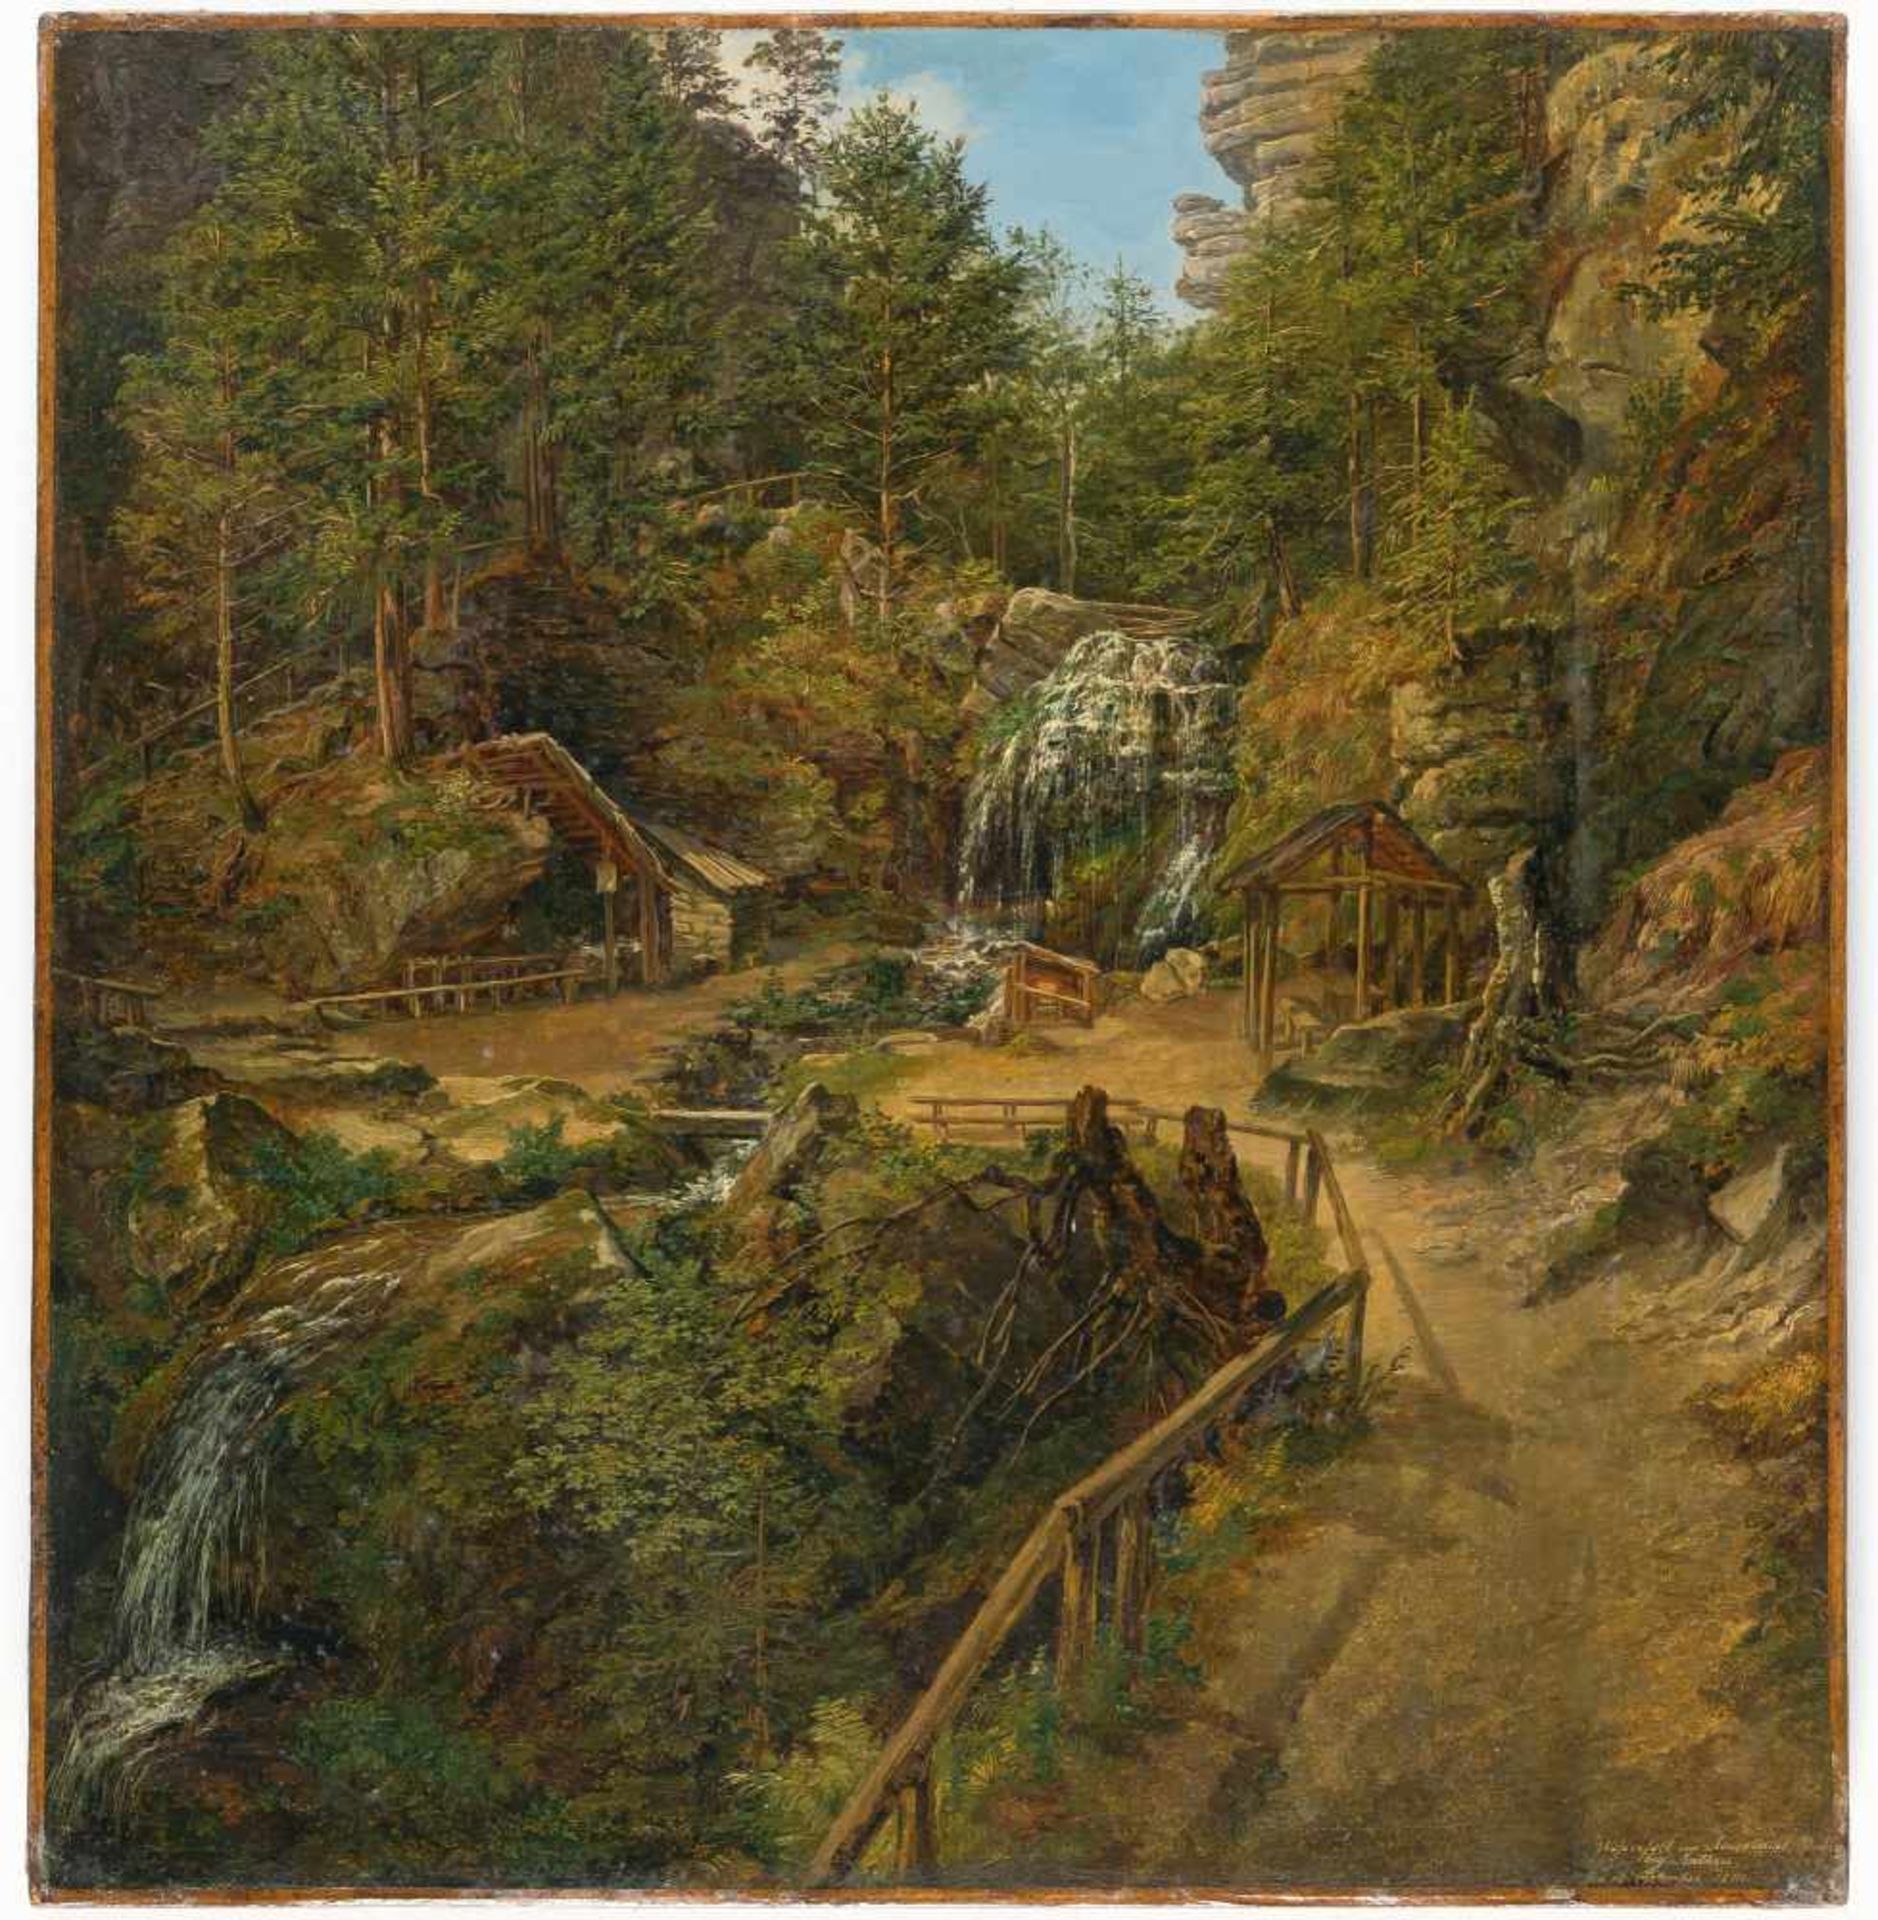 Matthias Rudolf TomaWasserfall im Amseltal bei RathenÖl auf Leinwand. 1842. 36 x 34,5 cm. Signiert - Bild 2 aus 3